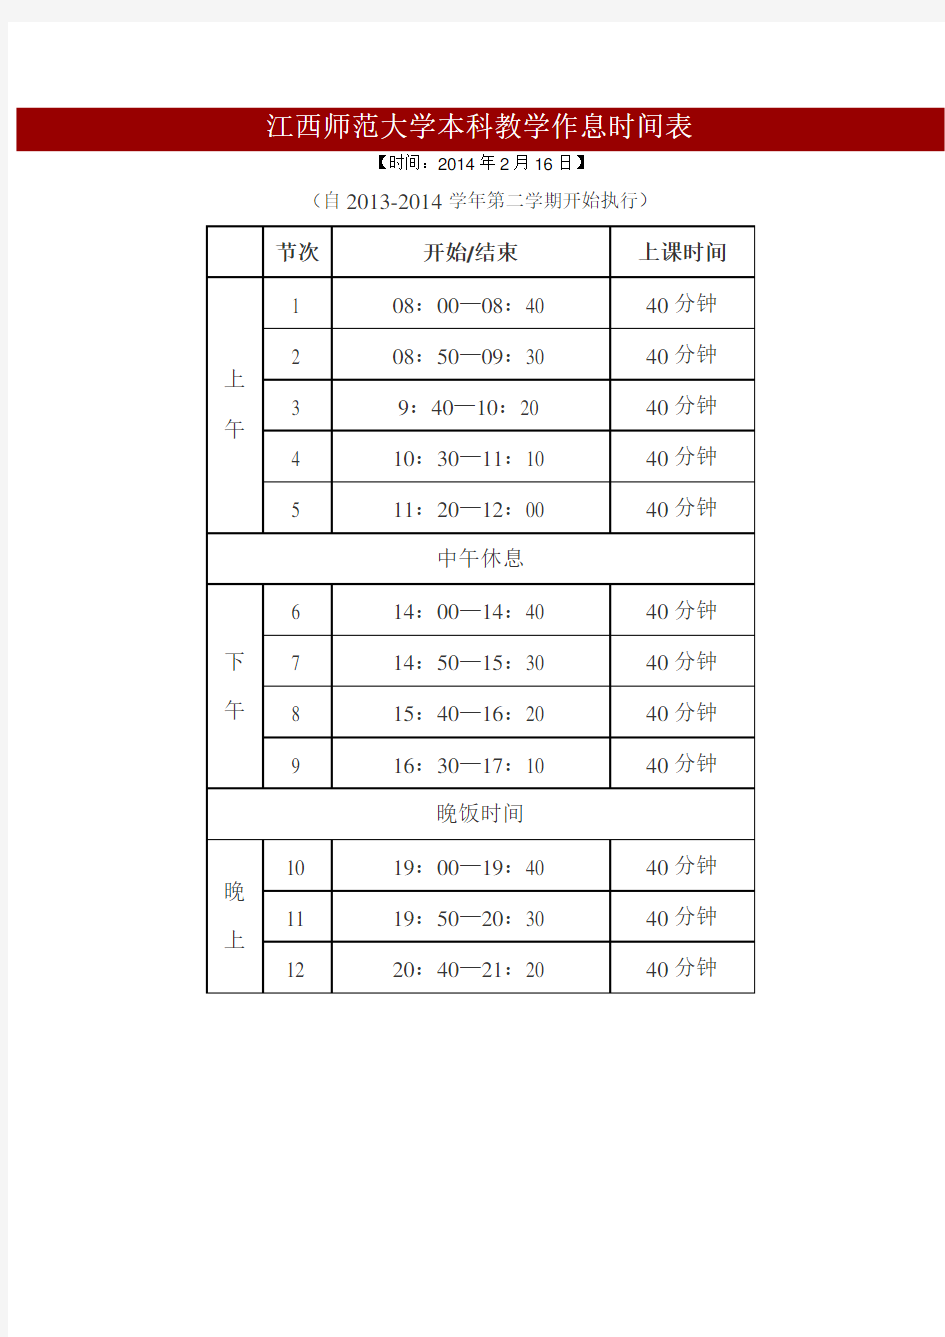 江西师范大学本科教学作息时间表